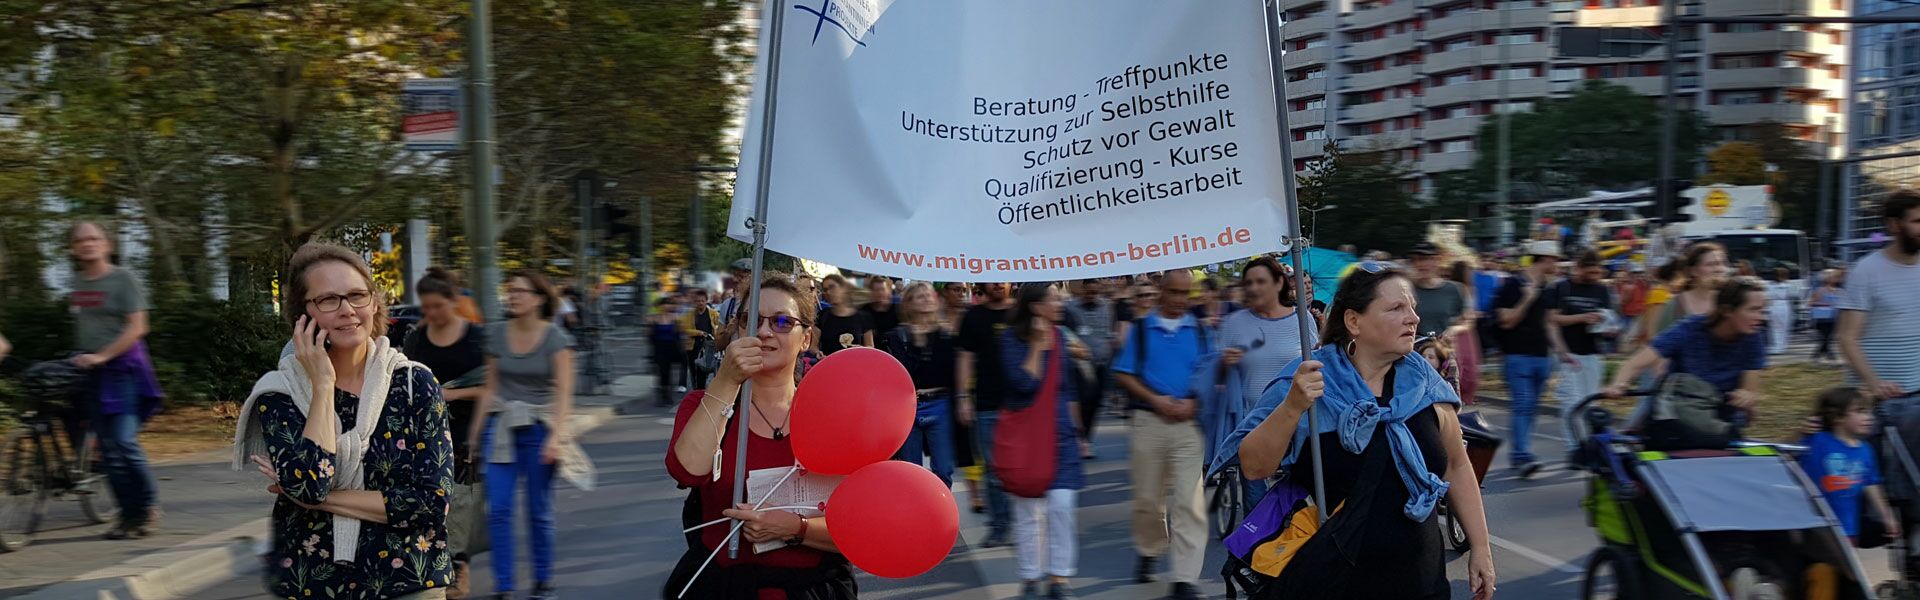 Die Mitfrauen des Forums Migrantinnen Berlin bei einer Demonstration